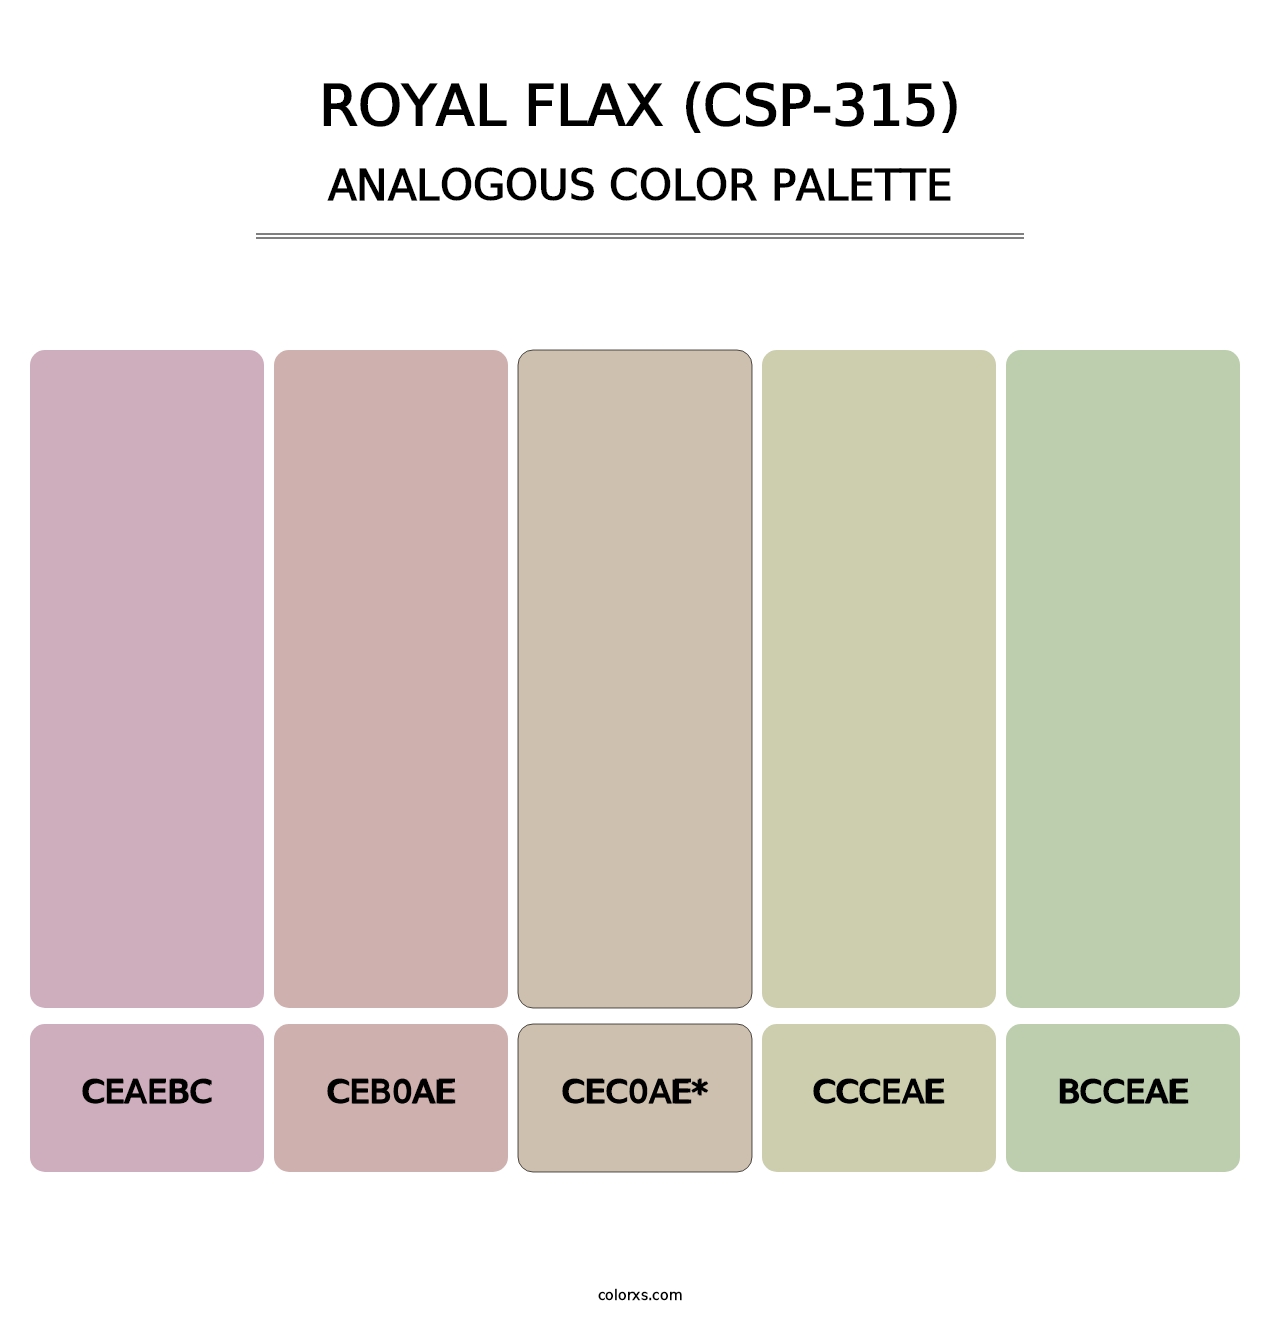 Royal Flax (CSP-315) - Analogous Color Palette